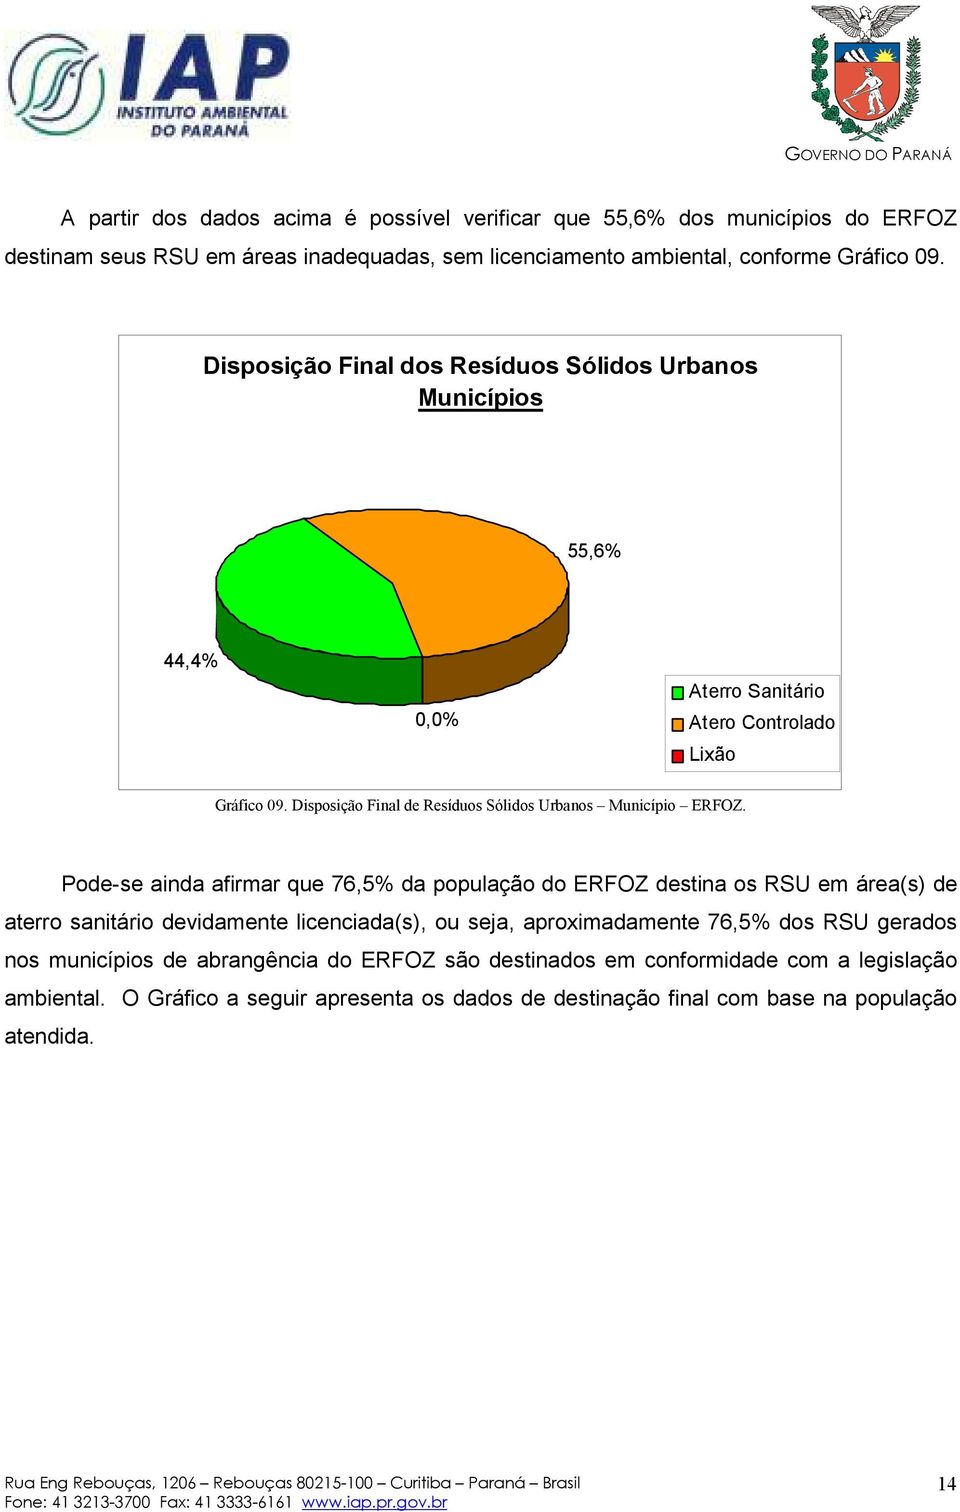 Pode-se ainda afirmar que 76,5% da população do ERFOZ destina os RSU em área(s) de aterro sanitário devidamente licenciada(s), ou seja, aproximadamente 76,5% dos